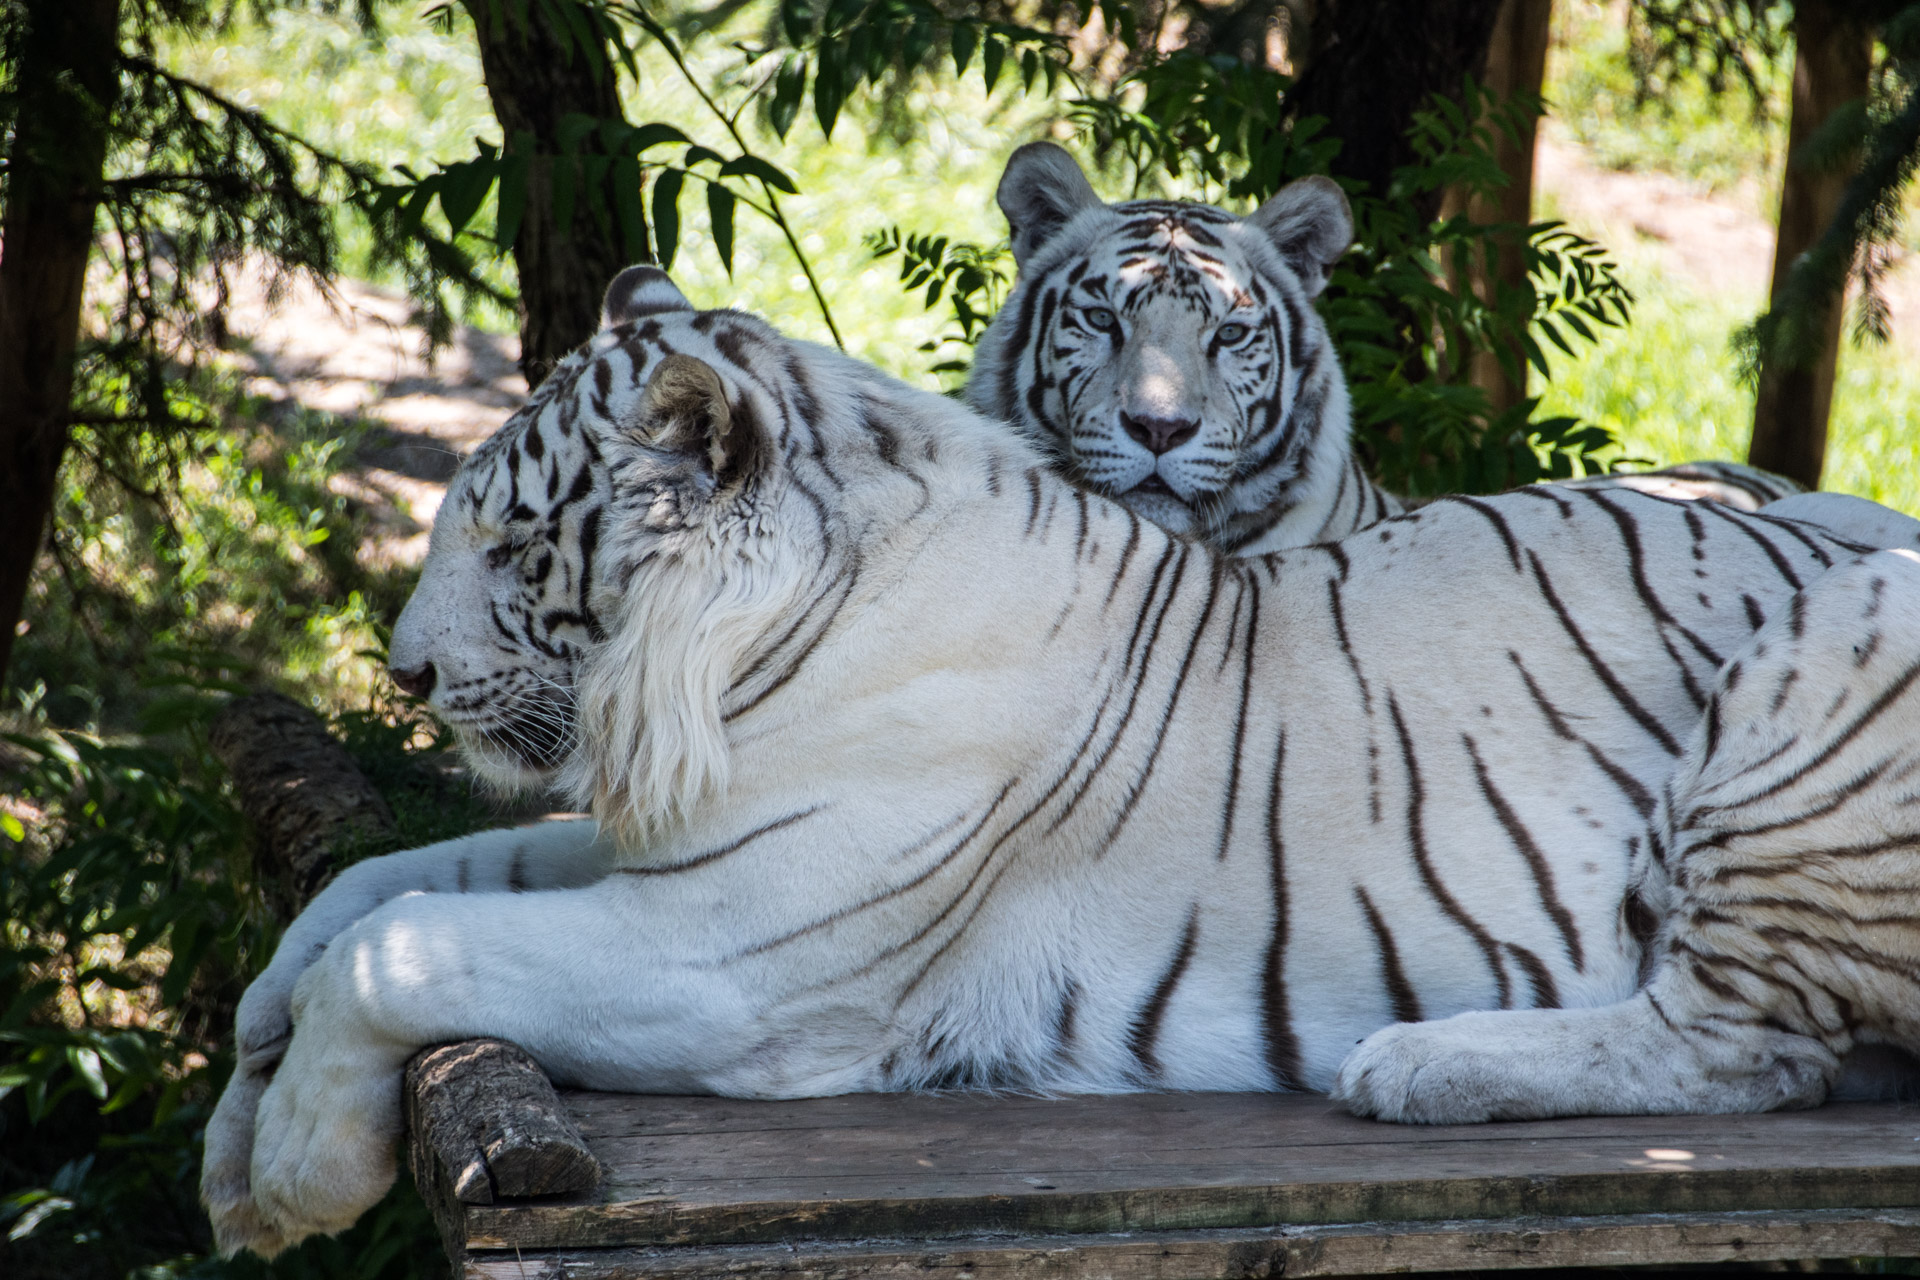 Tigres blancs, mammifères carnivores de la famille des félidés, présentant une mutation génétique lui conférant une robe blanche rayée de noir.